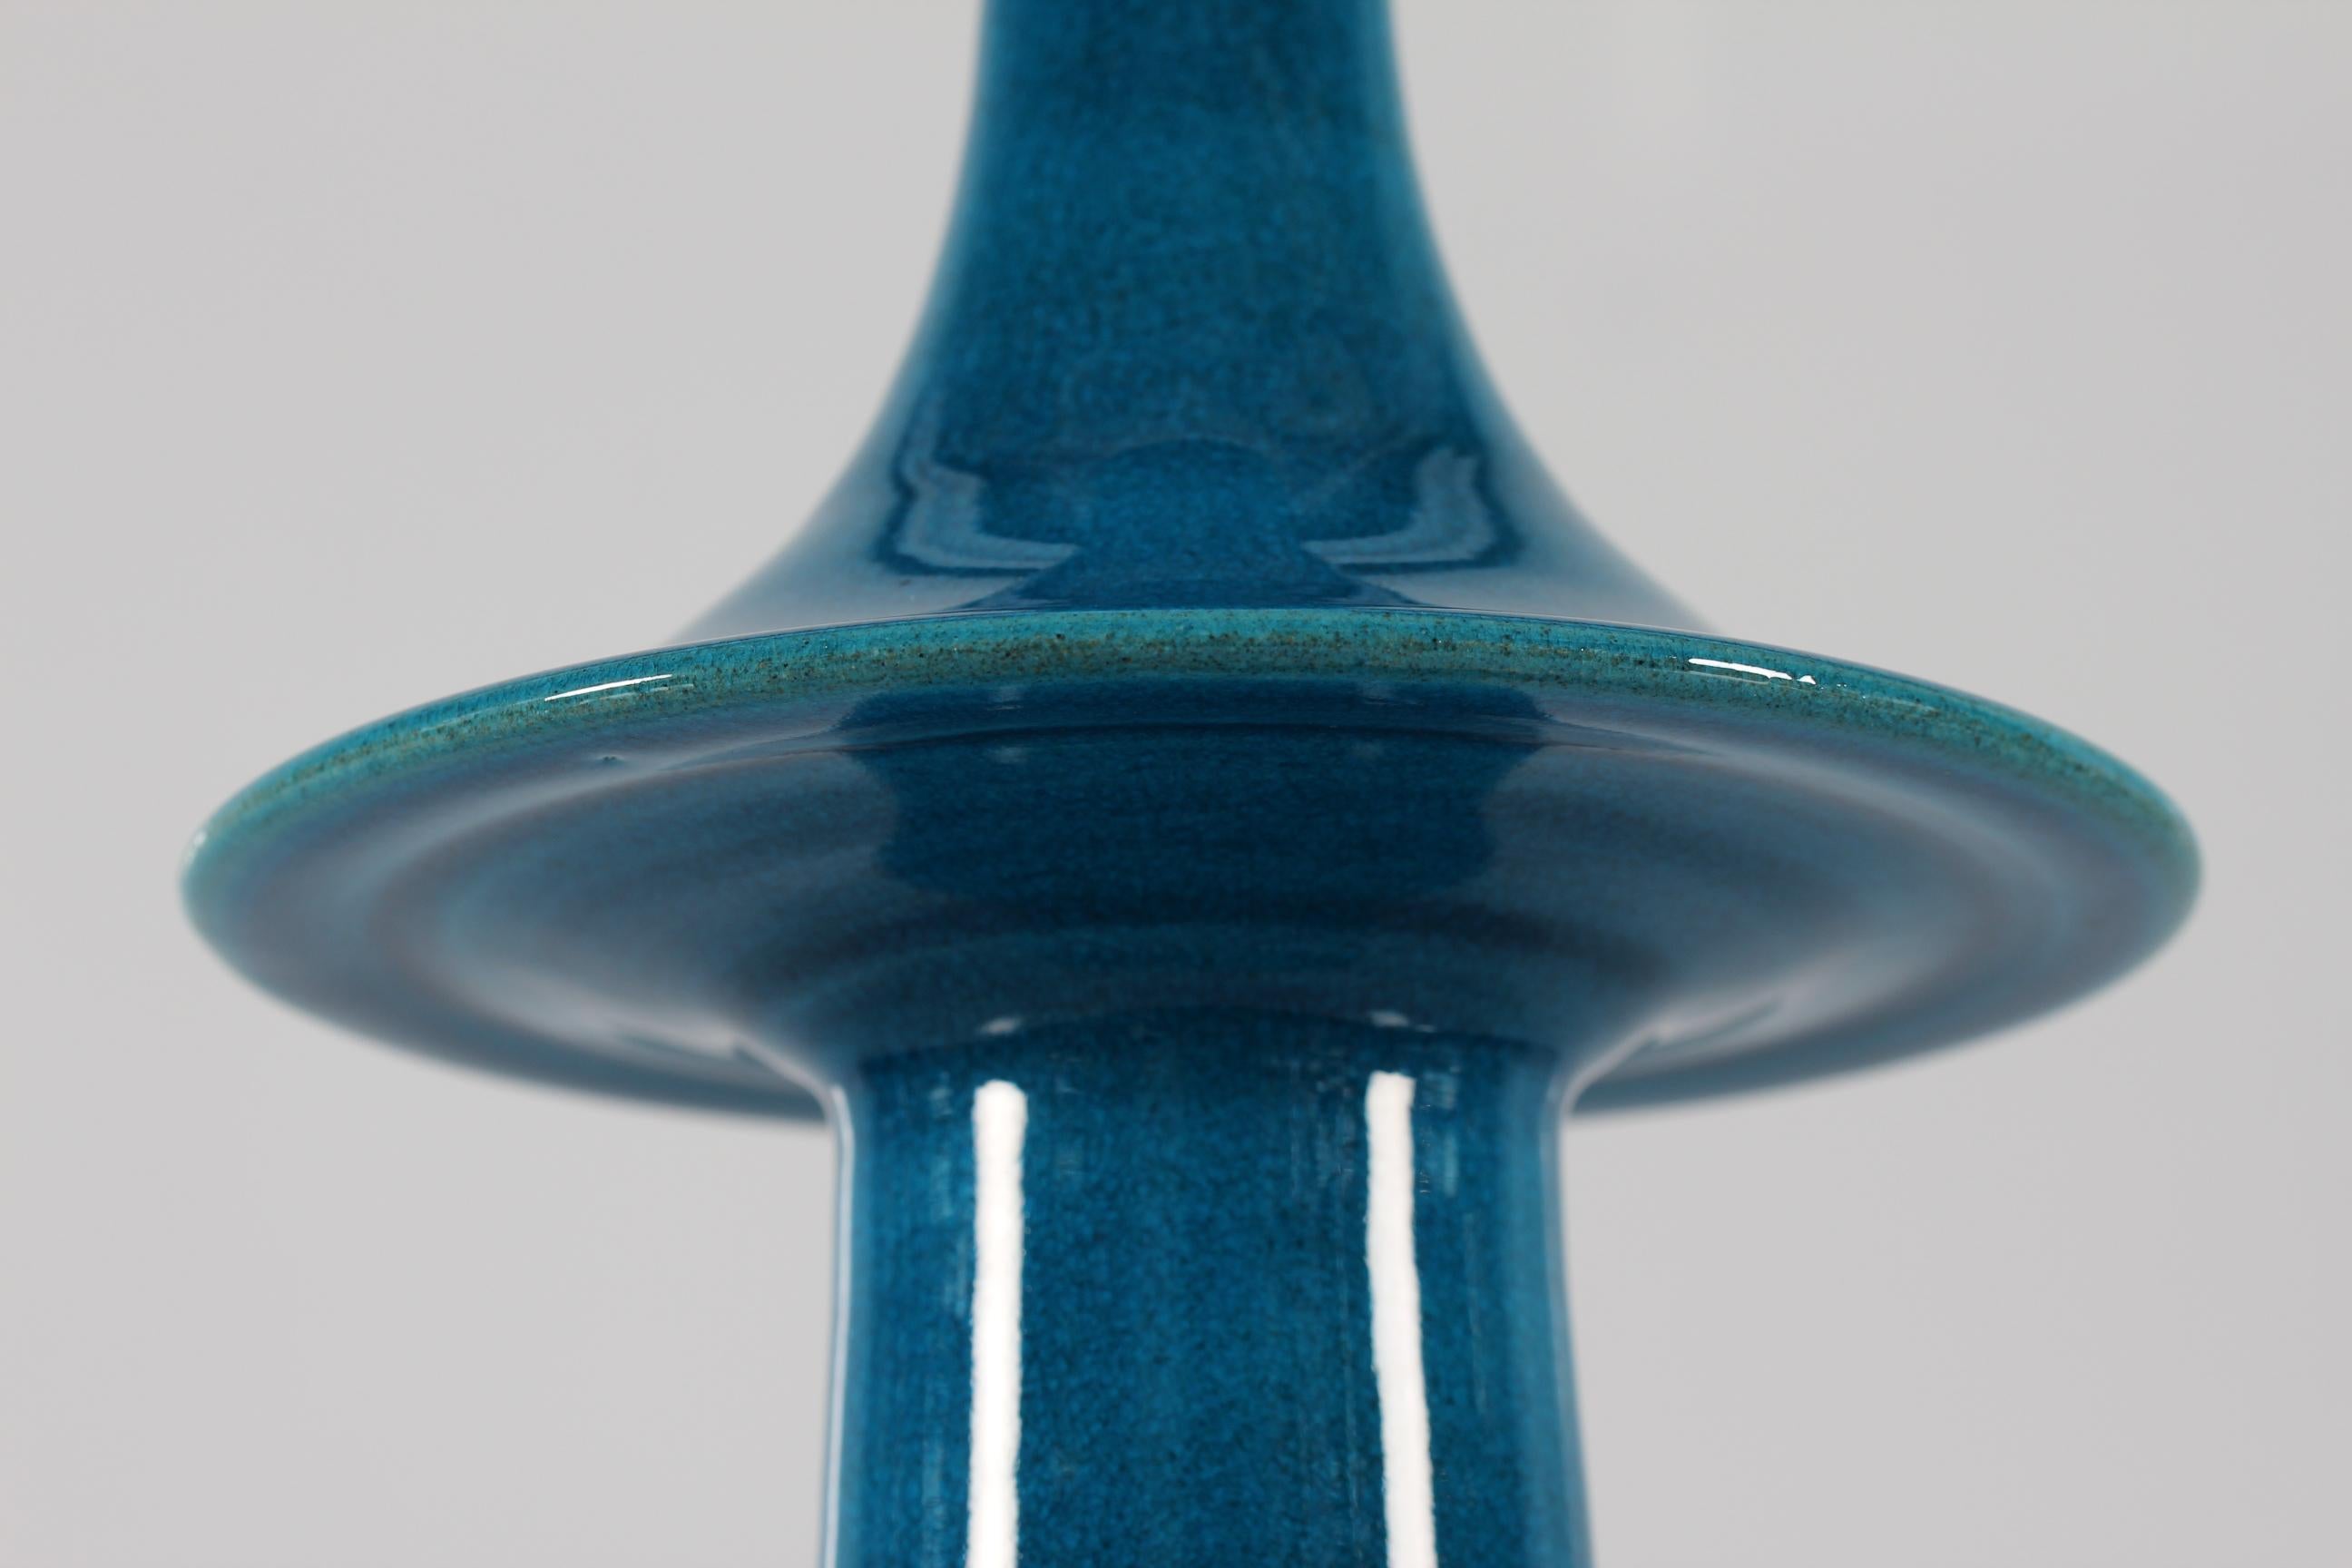 Ceramic Danish Kähler + Poul Erik Eliasen Style Sculptural Table Lamp Turquoise Blue 60s For Sale